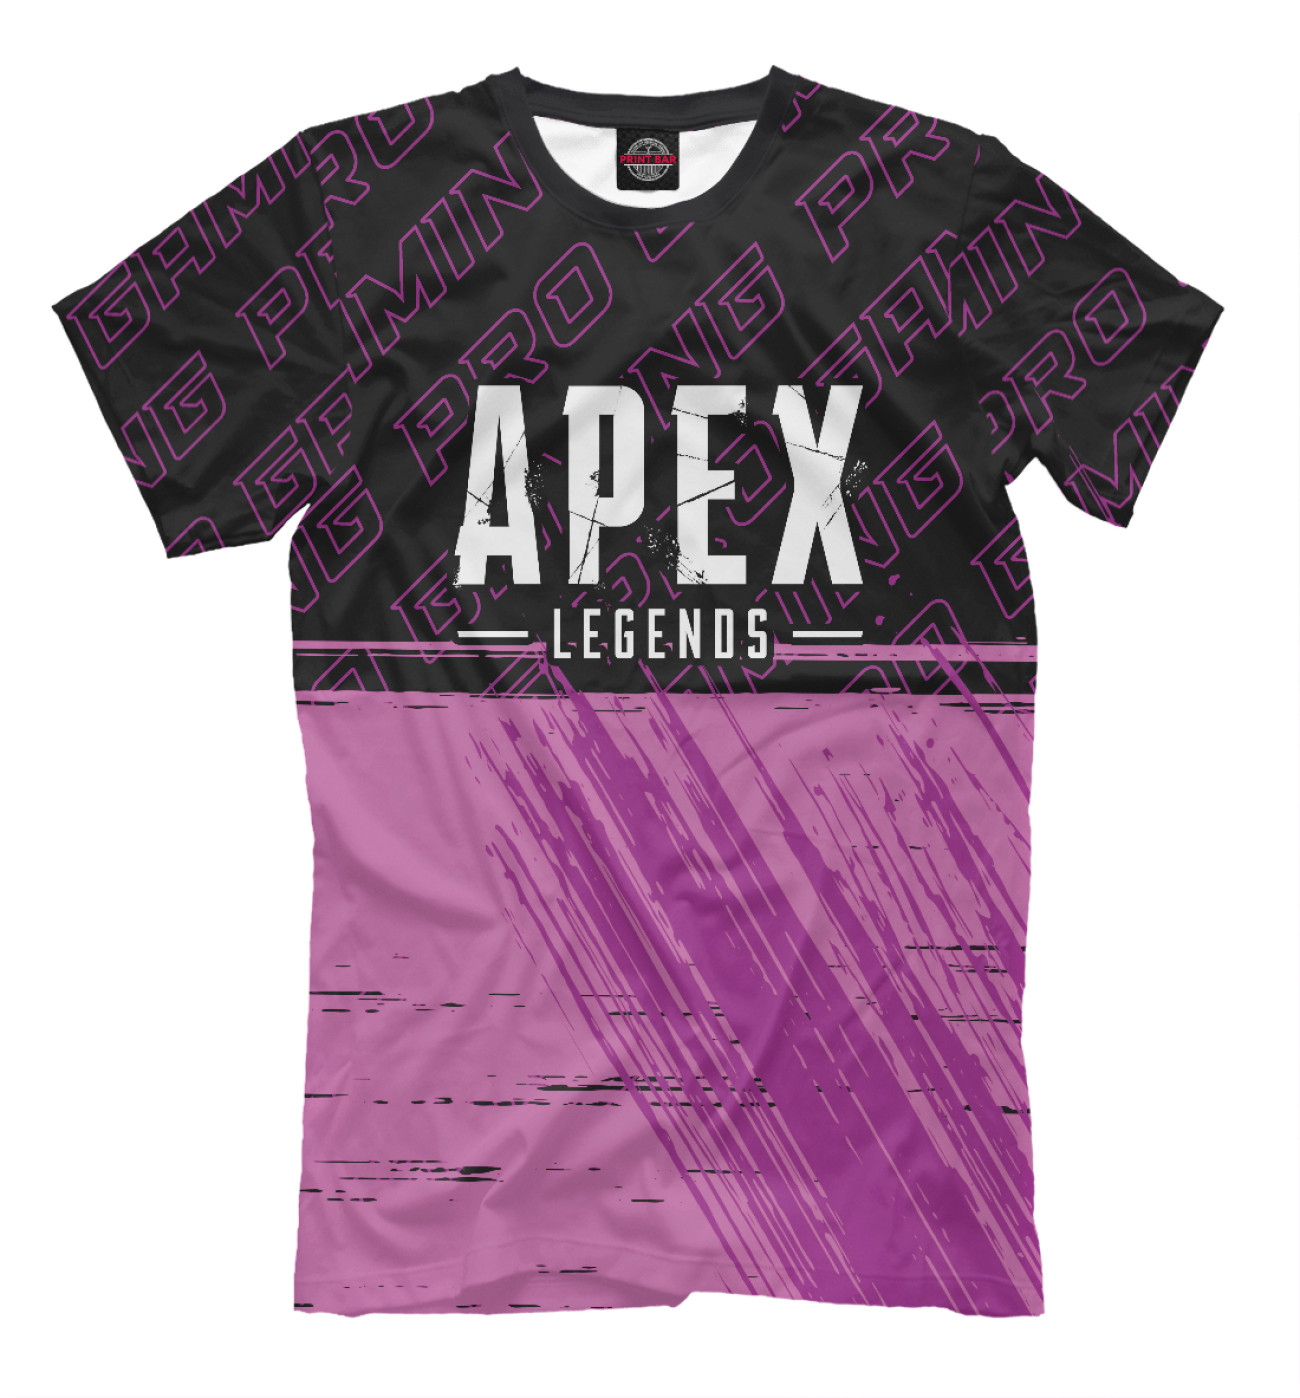 Мужская Футболка Apex Legends Pro Gaming, артикул: APX-796996-fut-2